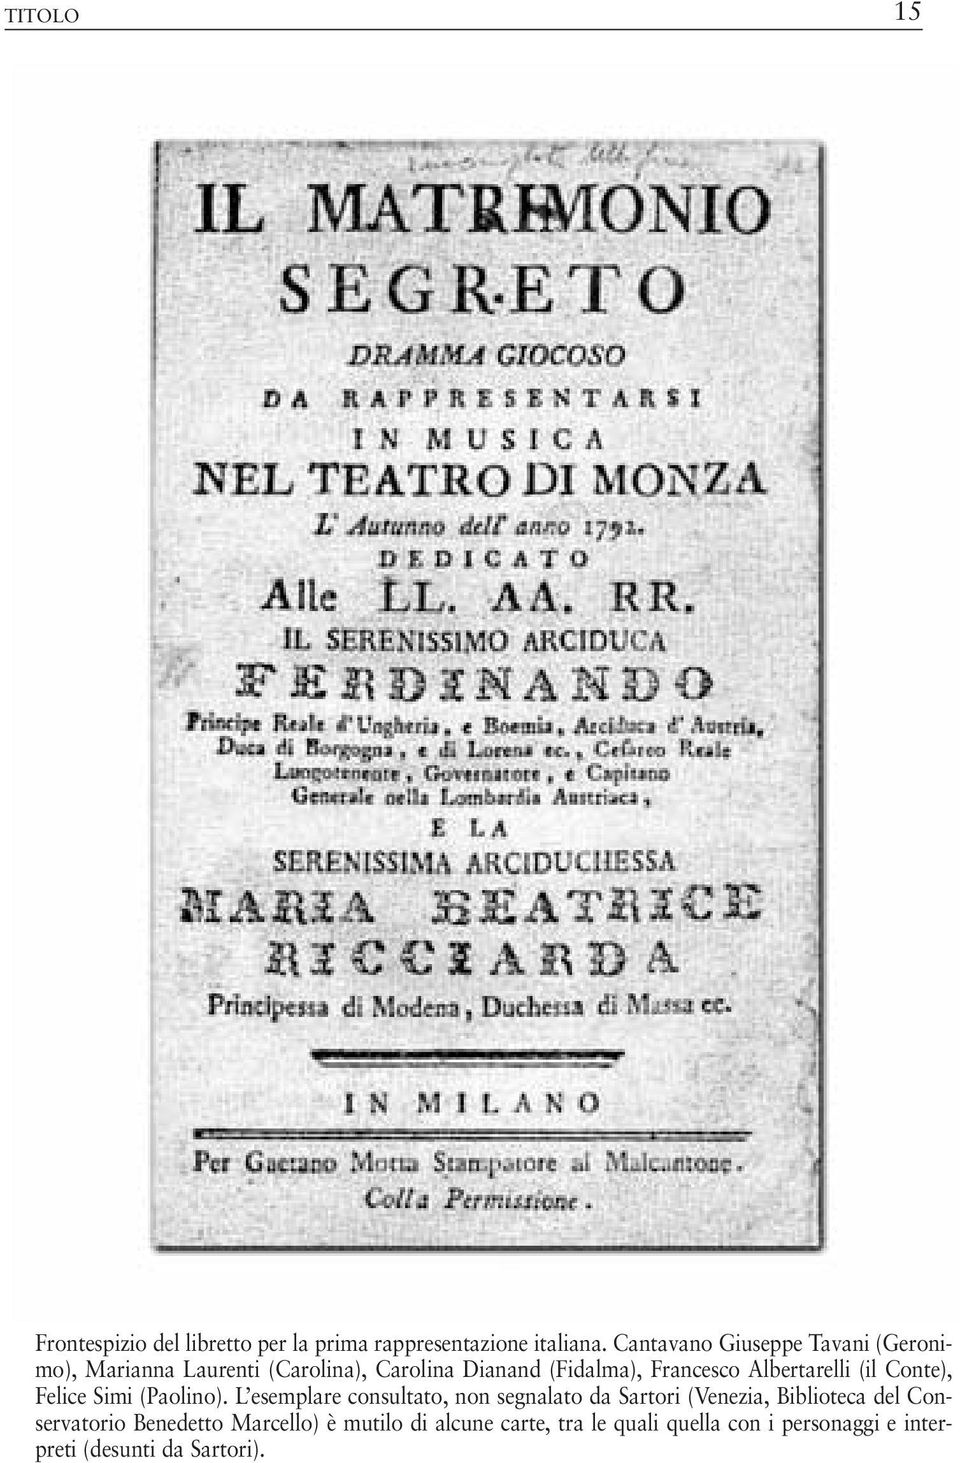 Albertarelli (il Conte), Felice Simi (Paolino).